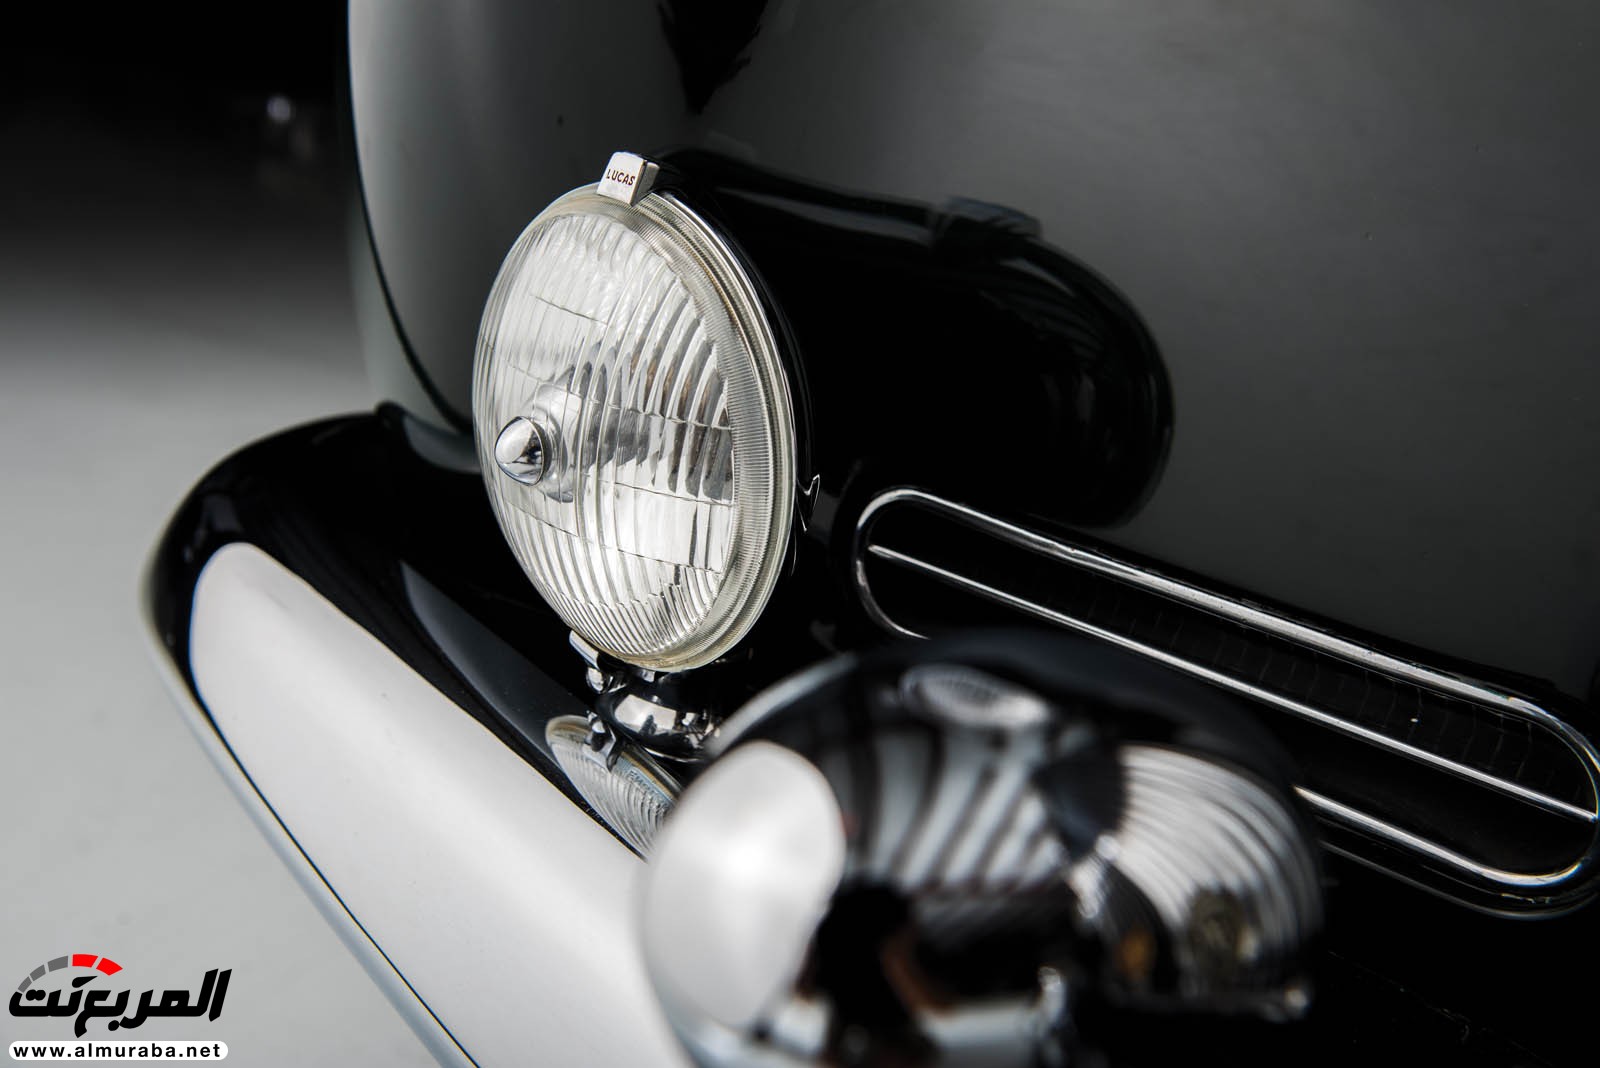 "رولز رويس" سيلفر كلاود 1959 ذات هيكلة الواجن تتوجه لتباع في مزاد عالمي Rolls-Royce Silver Cloud 76